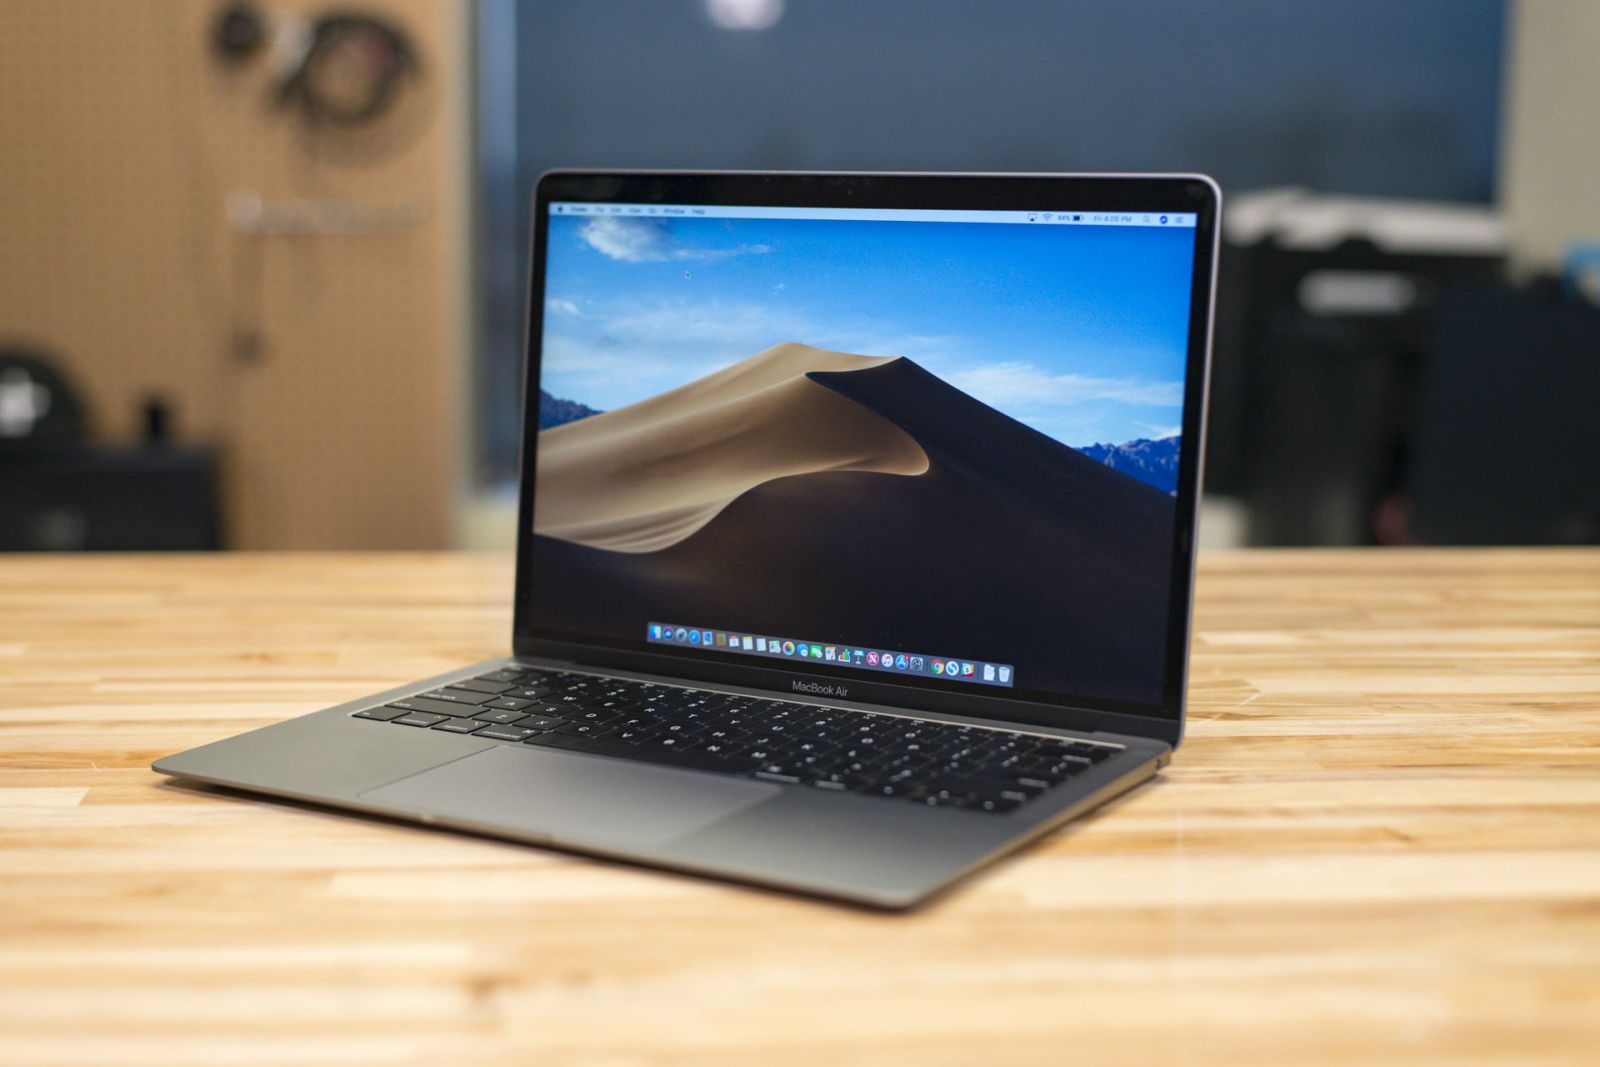 MacBook Air 2019 - 13 inch - 128GB - MVFH2 cũ đen